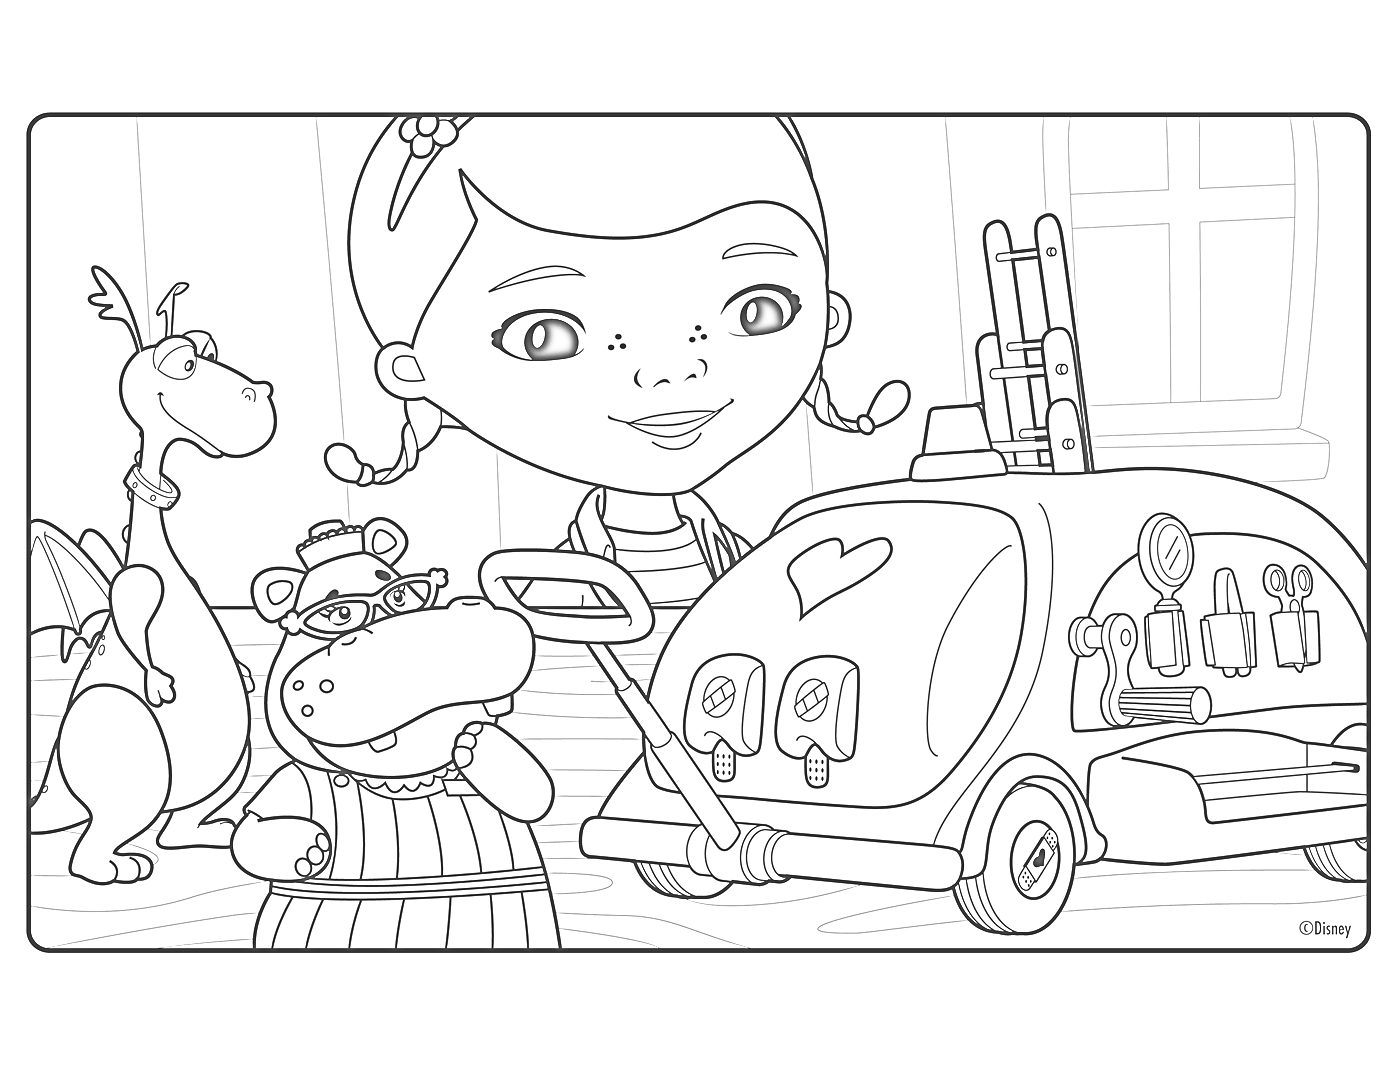 Раскраска Доктор Плюшева со своими друзьями и машиной скорой помощи